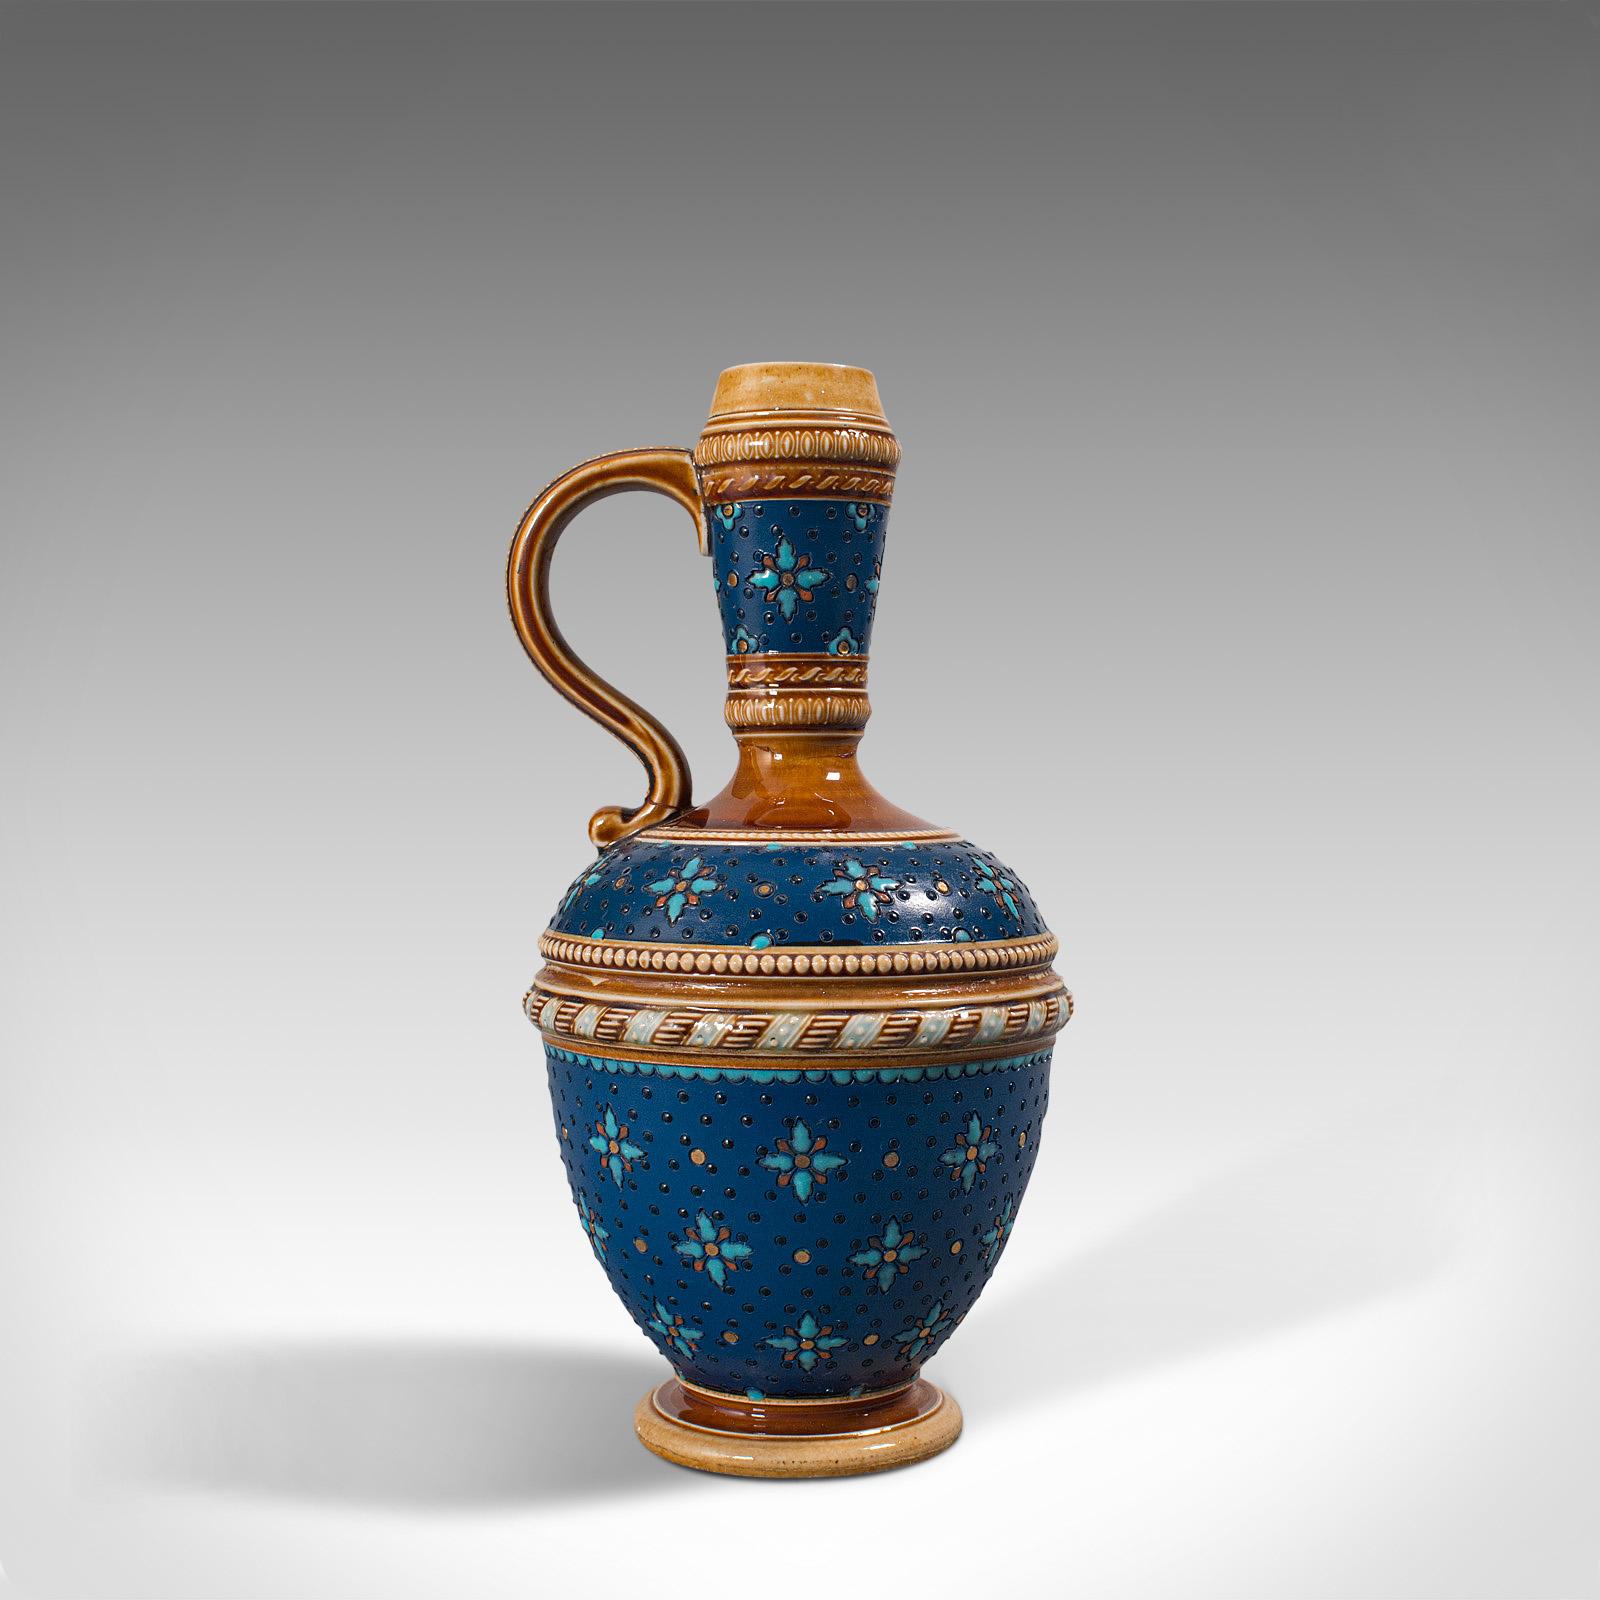 19th Century Antique Decorative Ewer, German, Ceramic, Serving Flask, Liqueur Bottle